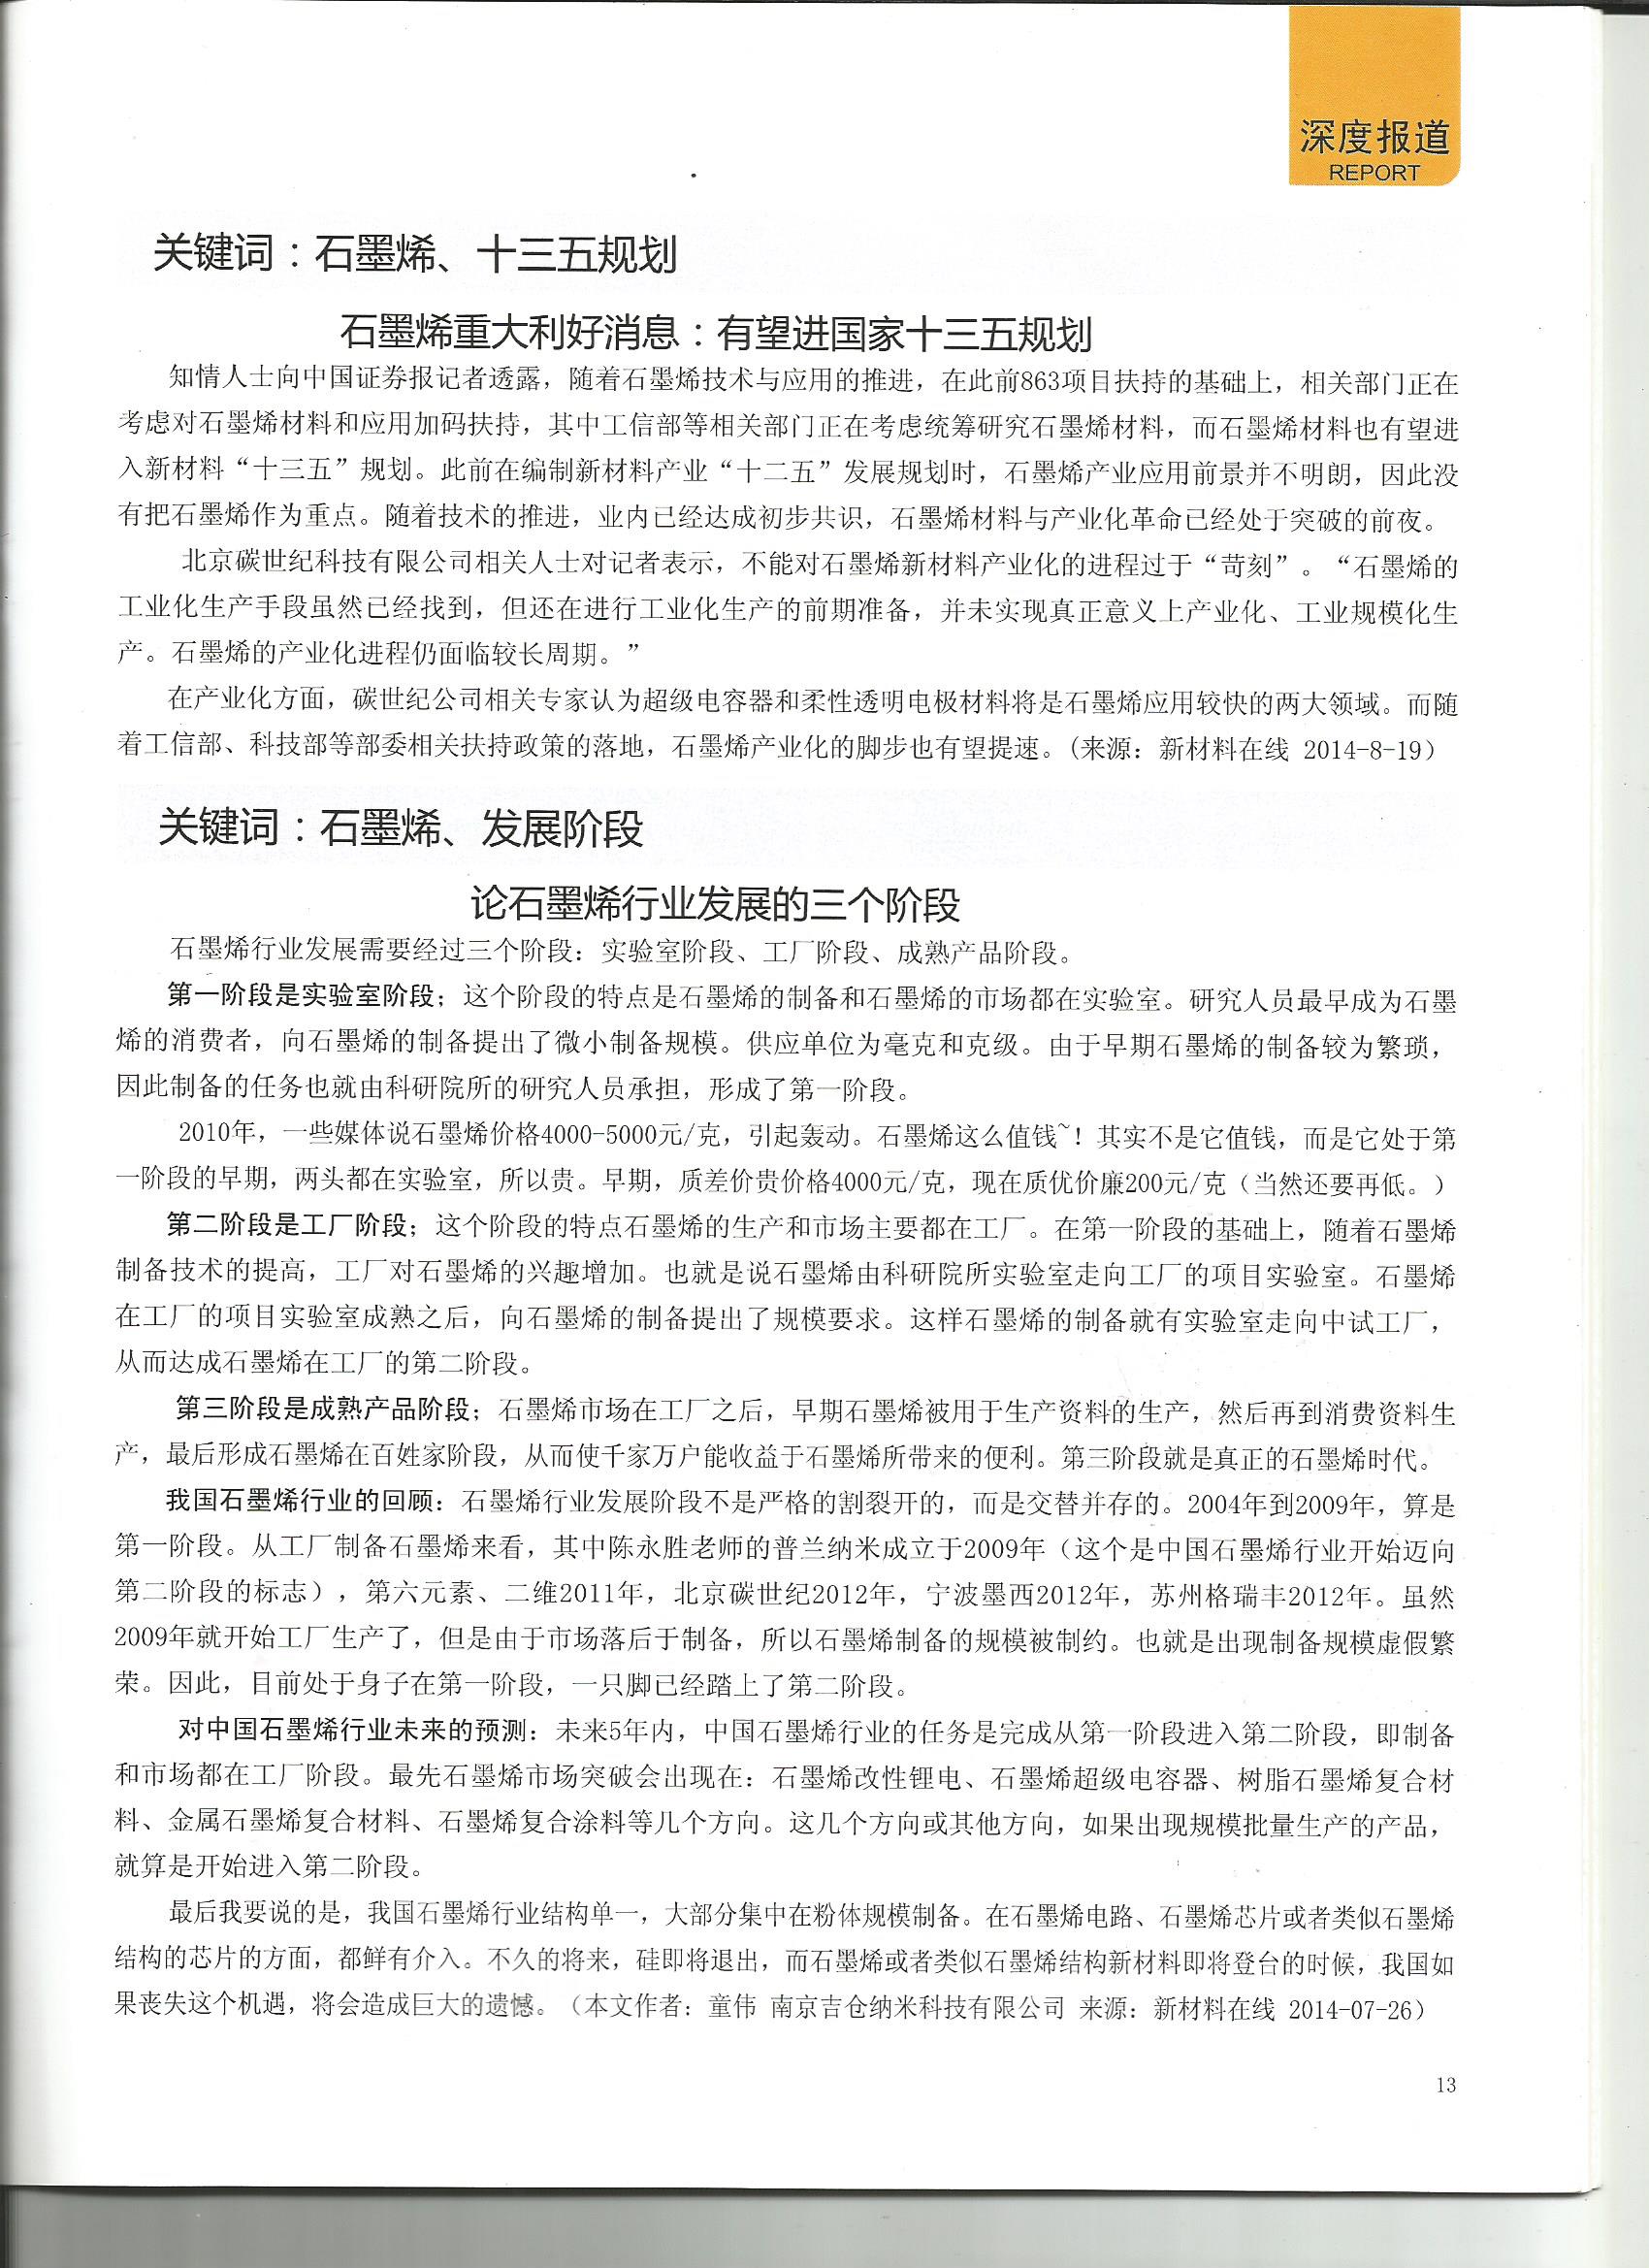 中国碳才网石墨烯媒体转载我公司董事长文章《论石墨烯行业发展的三个阶段》